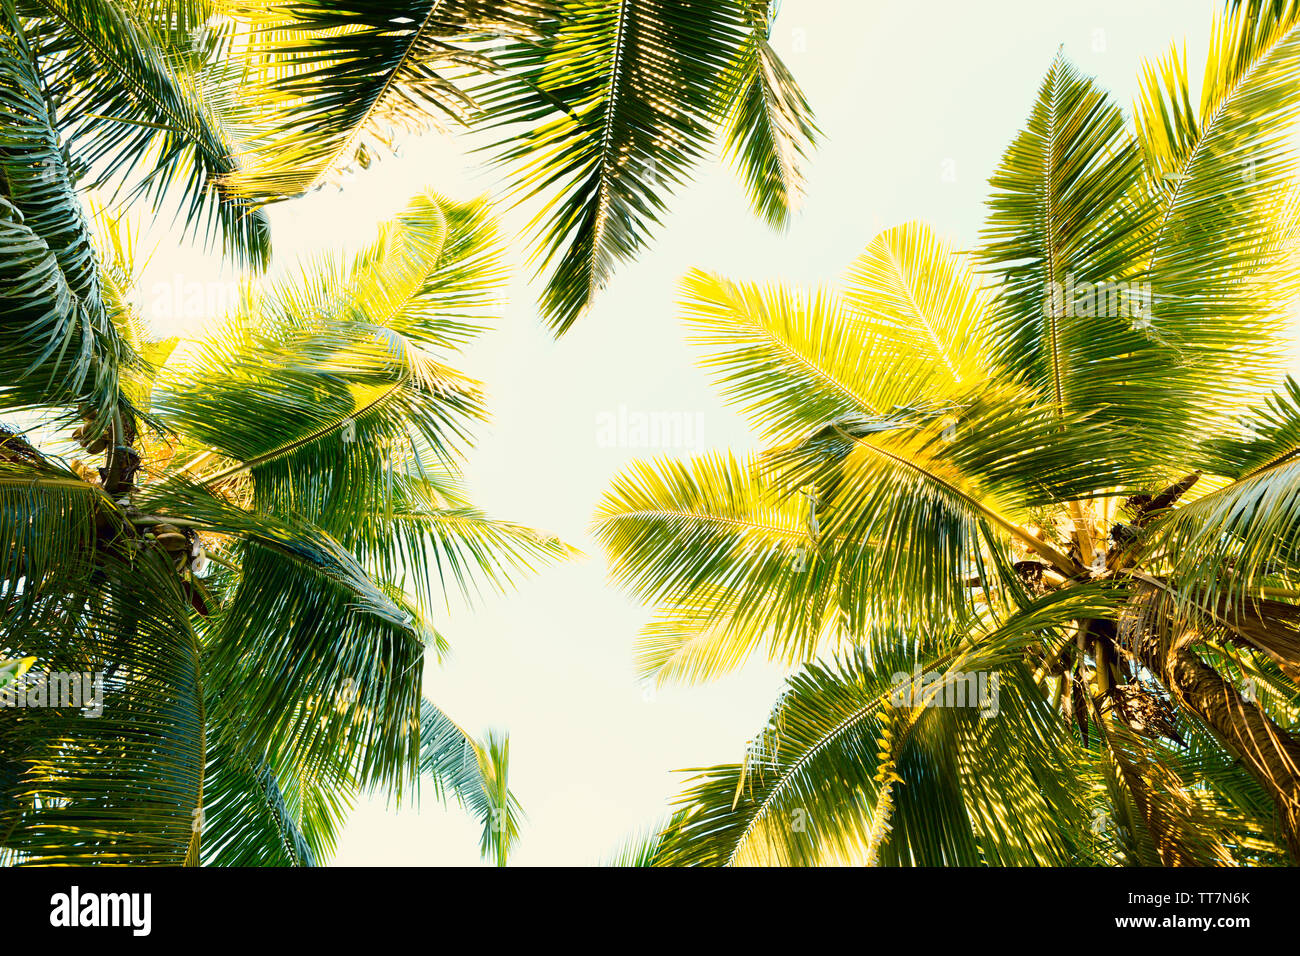 Kokospalmen auf klaren Sommerhimmel. Tropischen Hintergrund. Low Angle View. Getönten Bild. Stockfoto